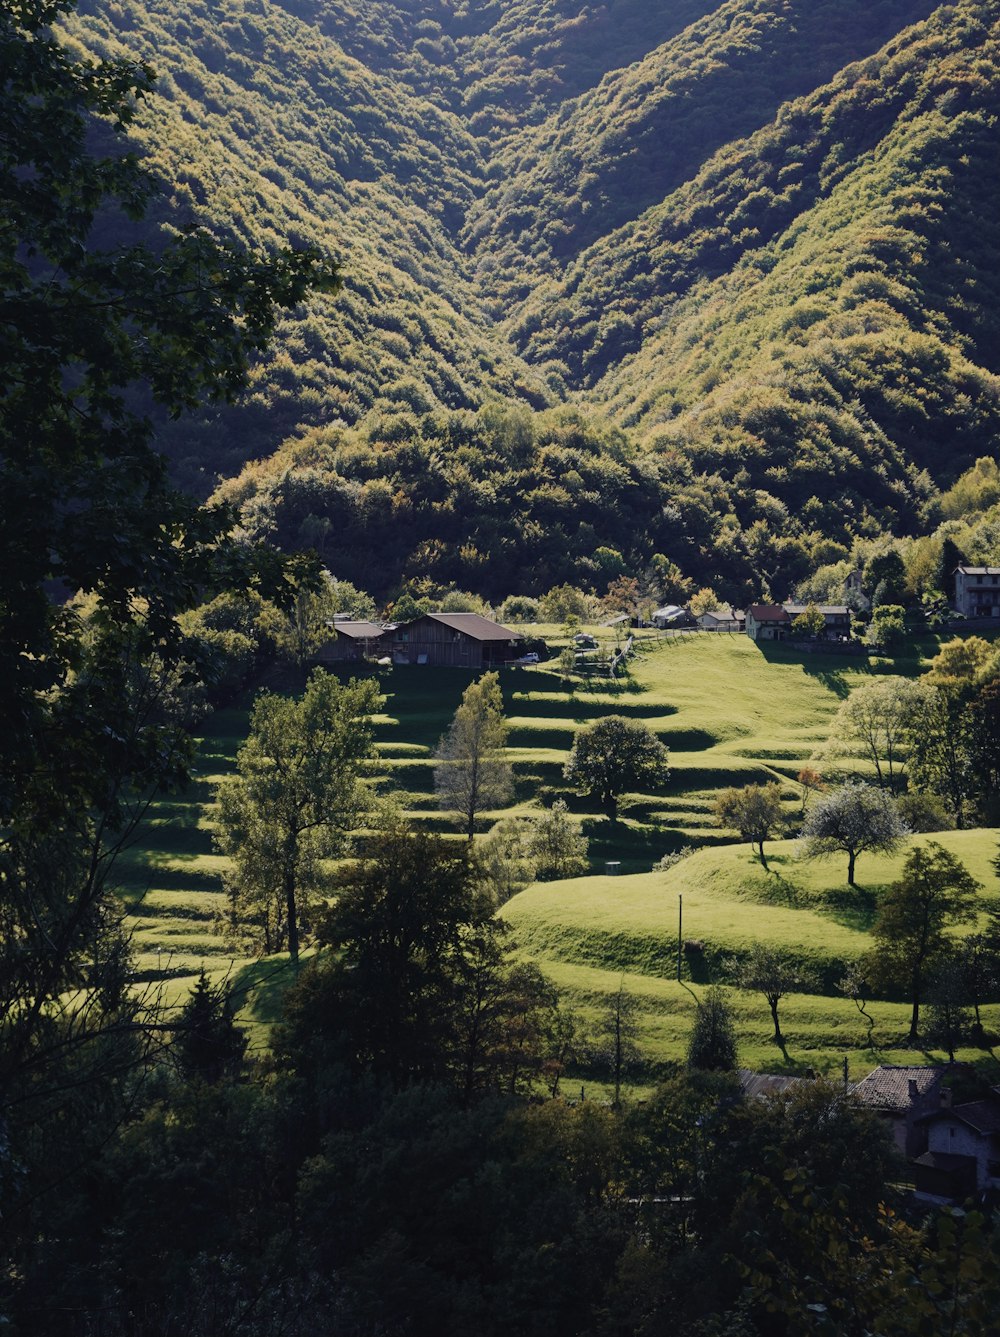 Ein üppiges grünes Tal, umgeben von Bergen